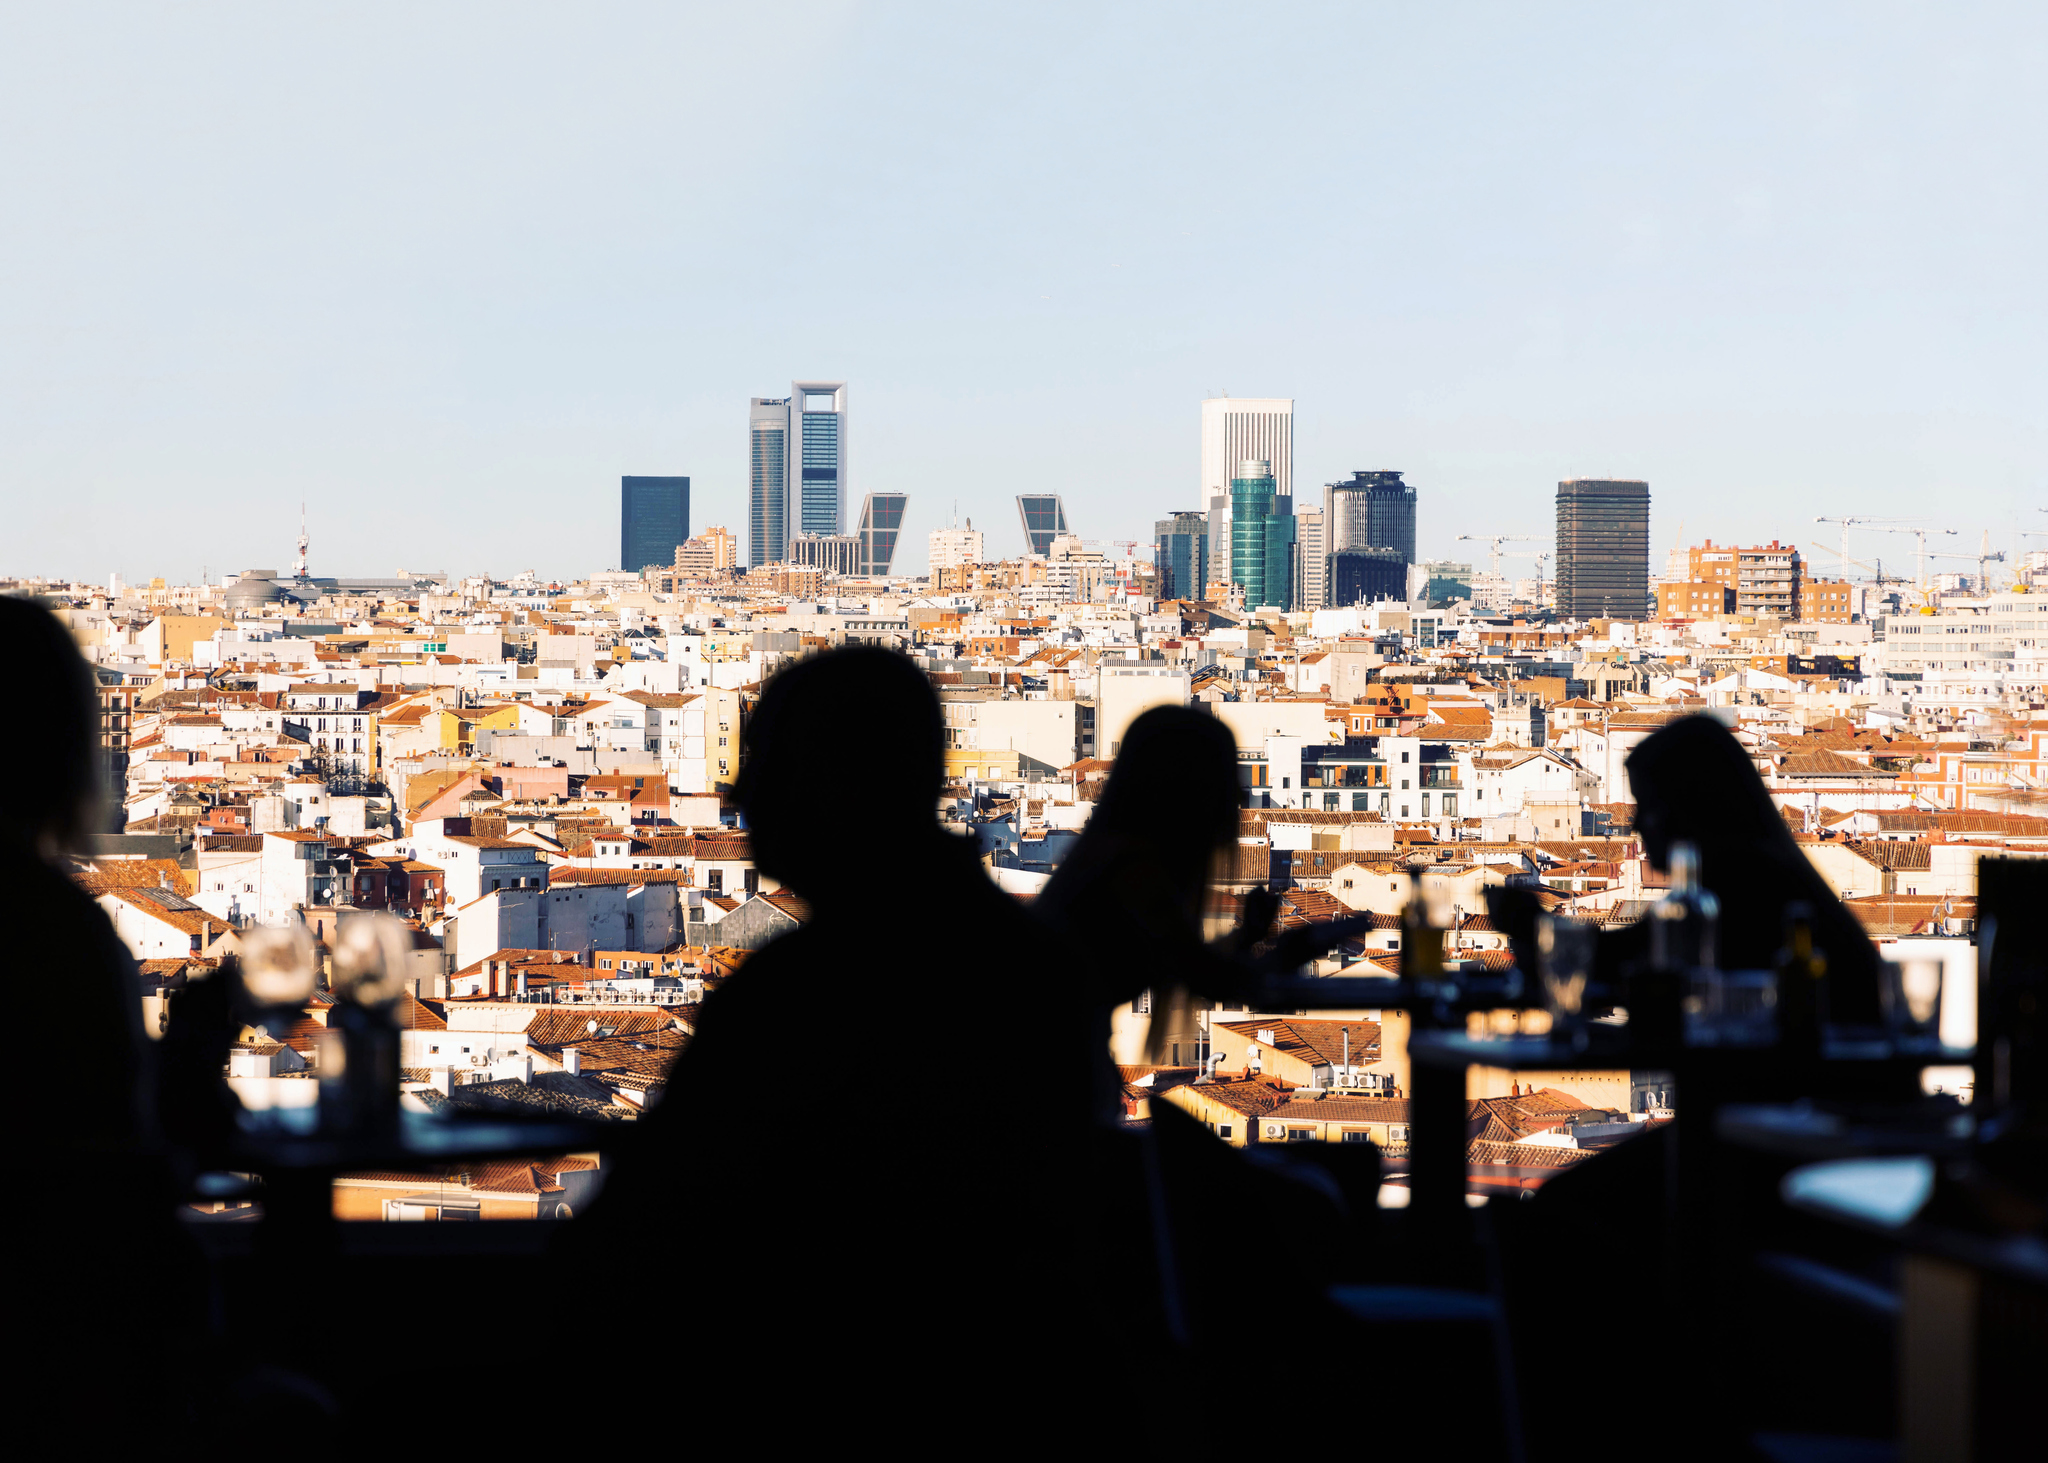 Varias cits de pareja es una de las terrazas de Madrid.